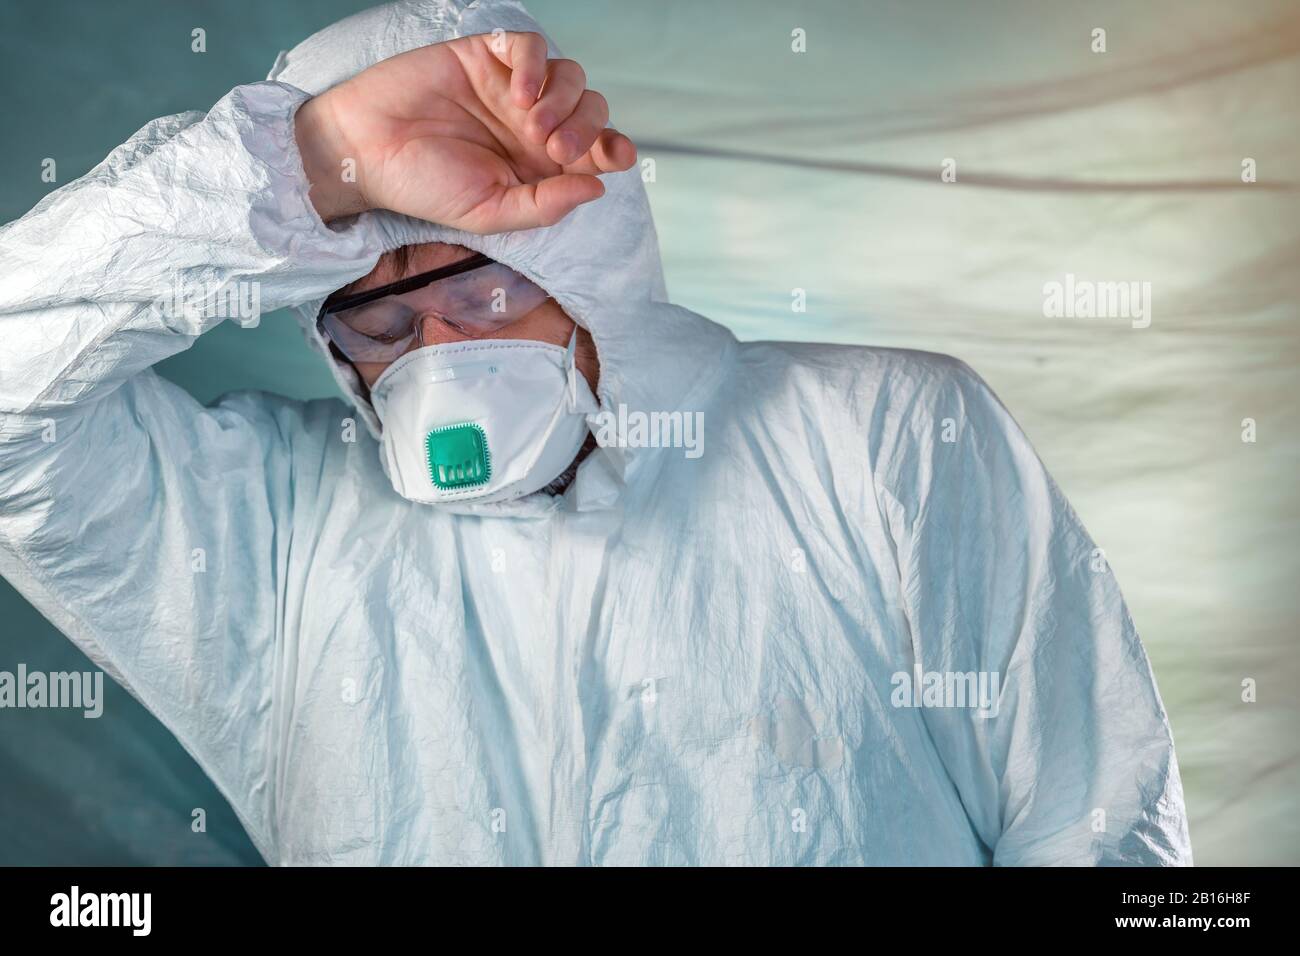 Müde Epidemiologen in wuhan-coronavirus Quarantäne, konzeptionelles Bild des medizinischen Facharztes, der Schutzkleidung und Maske trägt. Stockfoto